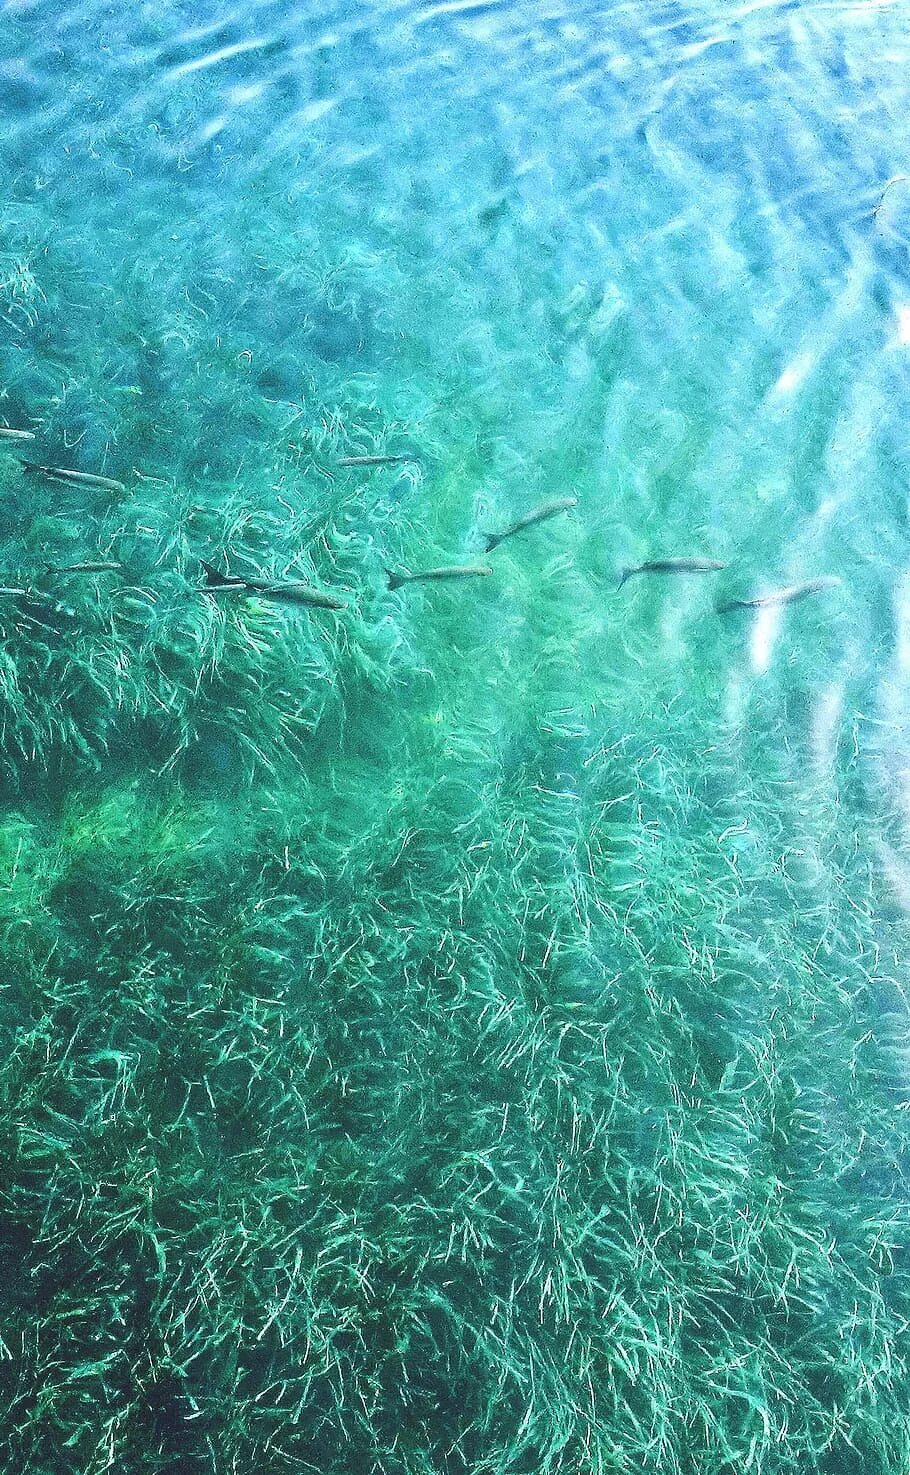 Вода на греческом. Бирюзовое море. Бирюзовое море с рыбками. Бирюзовый цвет воды. Бирюзовая морская вода.